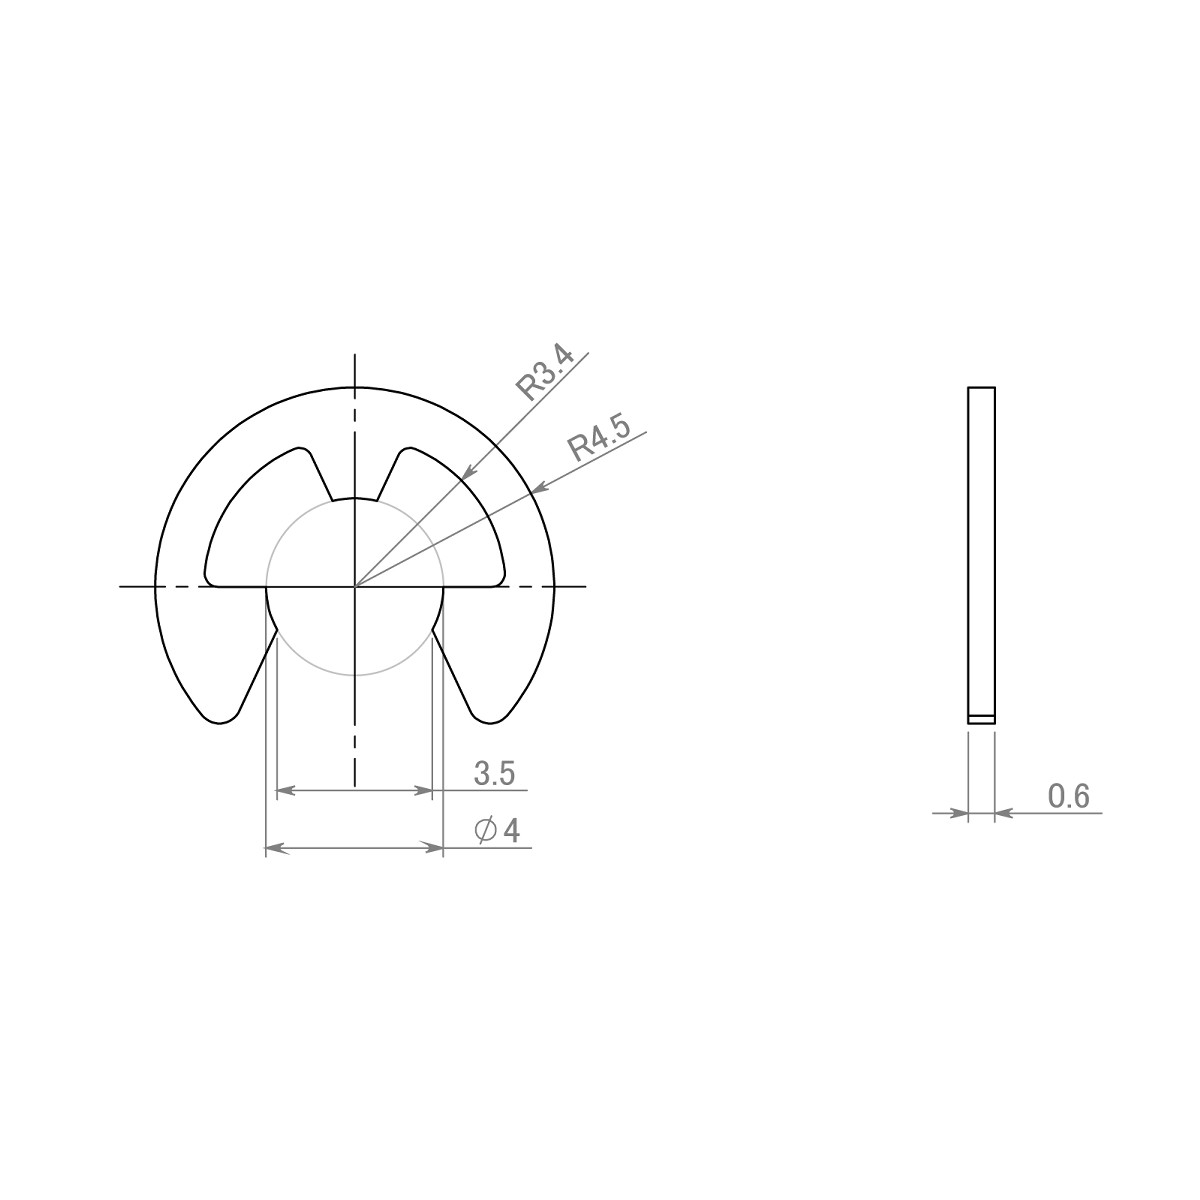 セイミツ工業製ジョイスティックレバー用 E形留め輪(Eリング) 呼び径4Φ (2個) 【SR-E-P4】